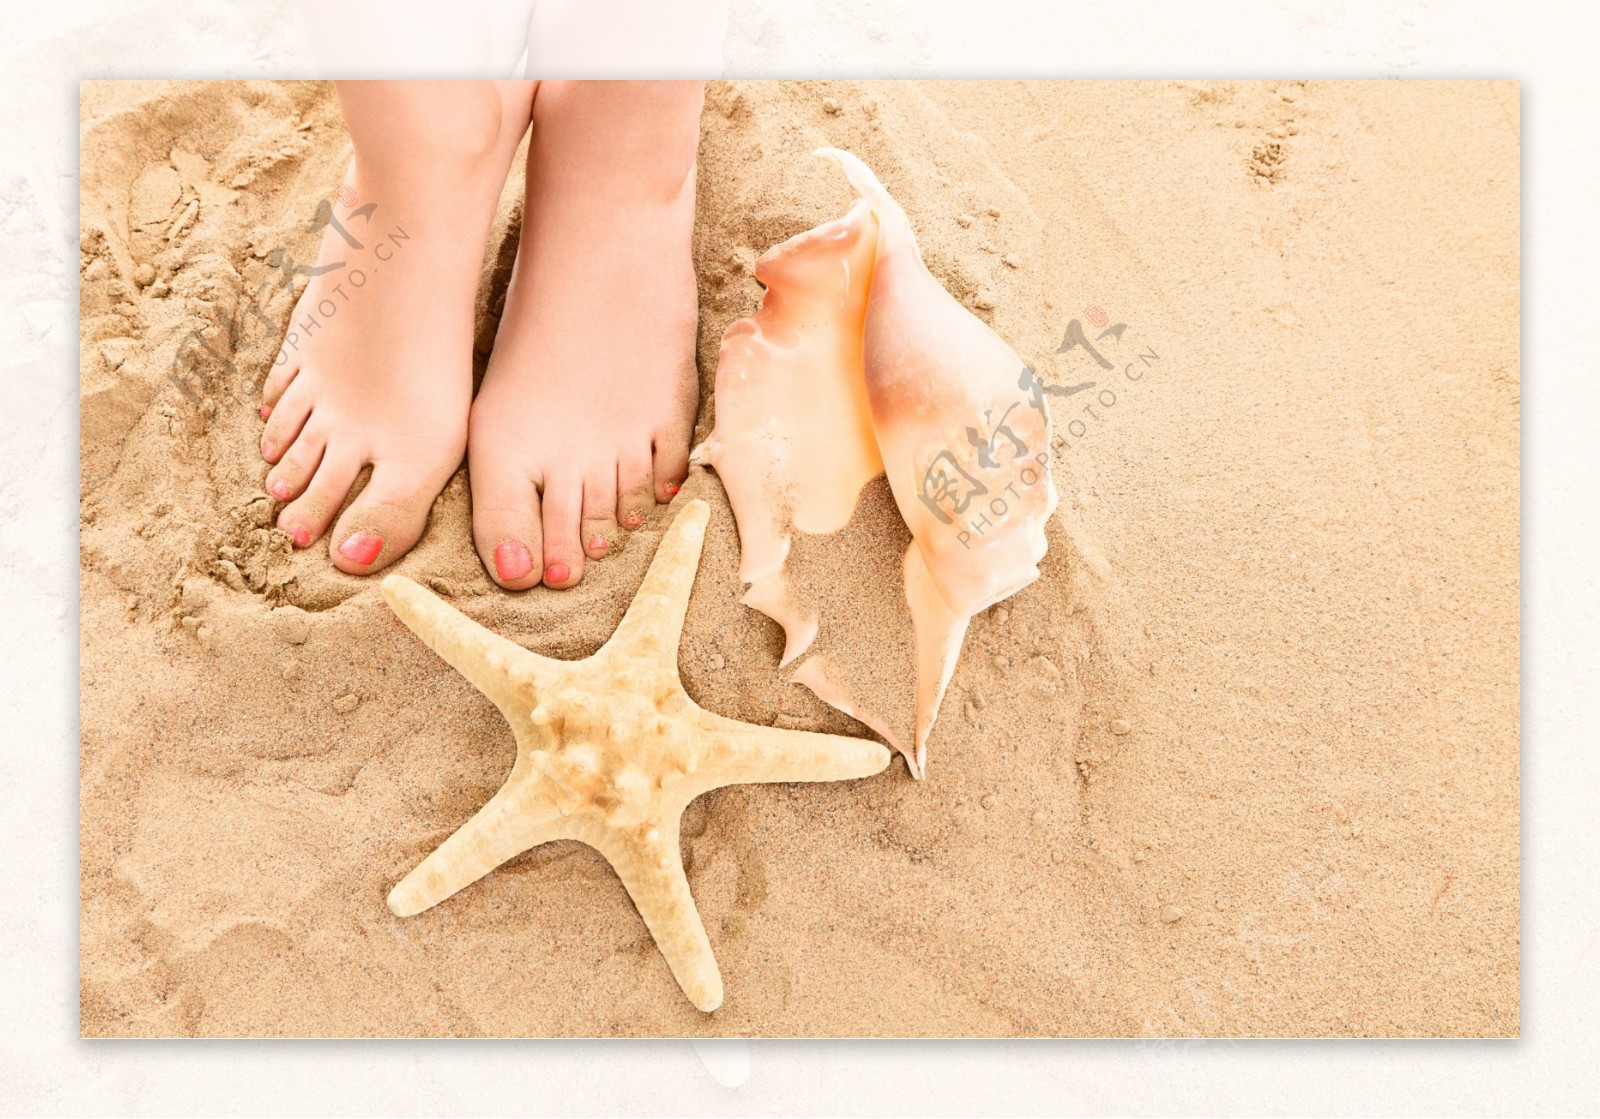 沙滩脚丫贝壳海星图片